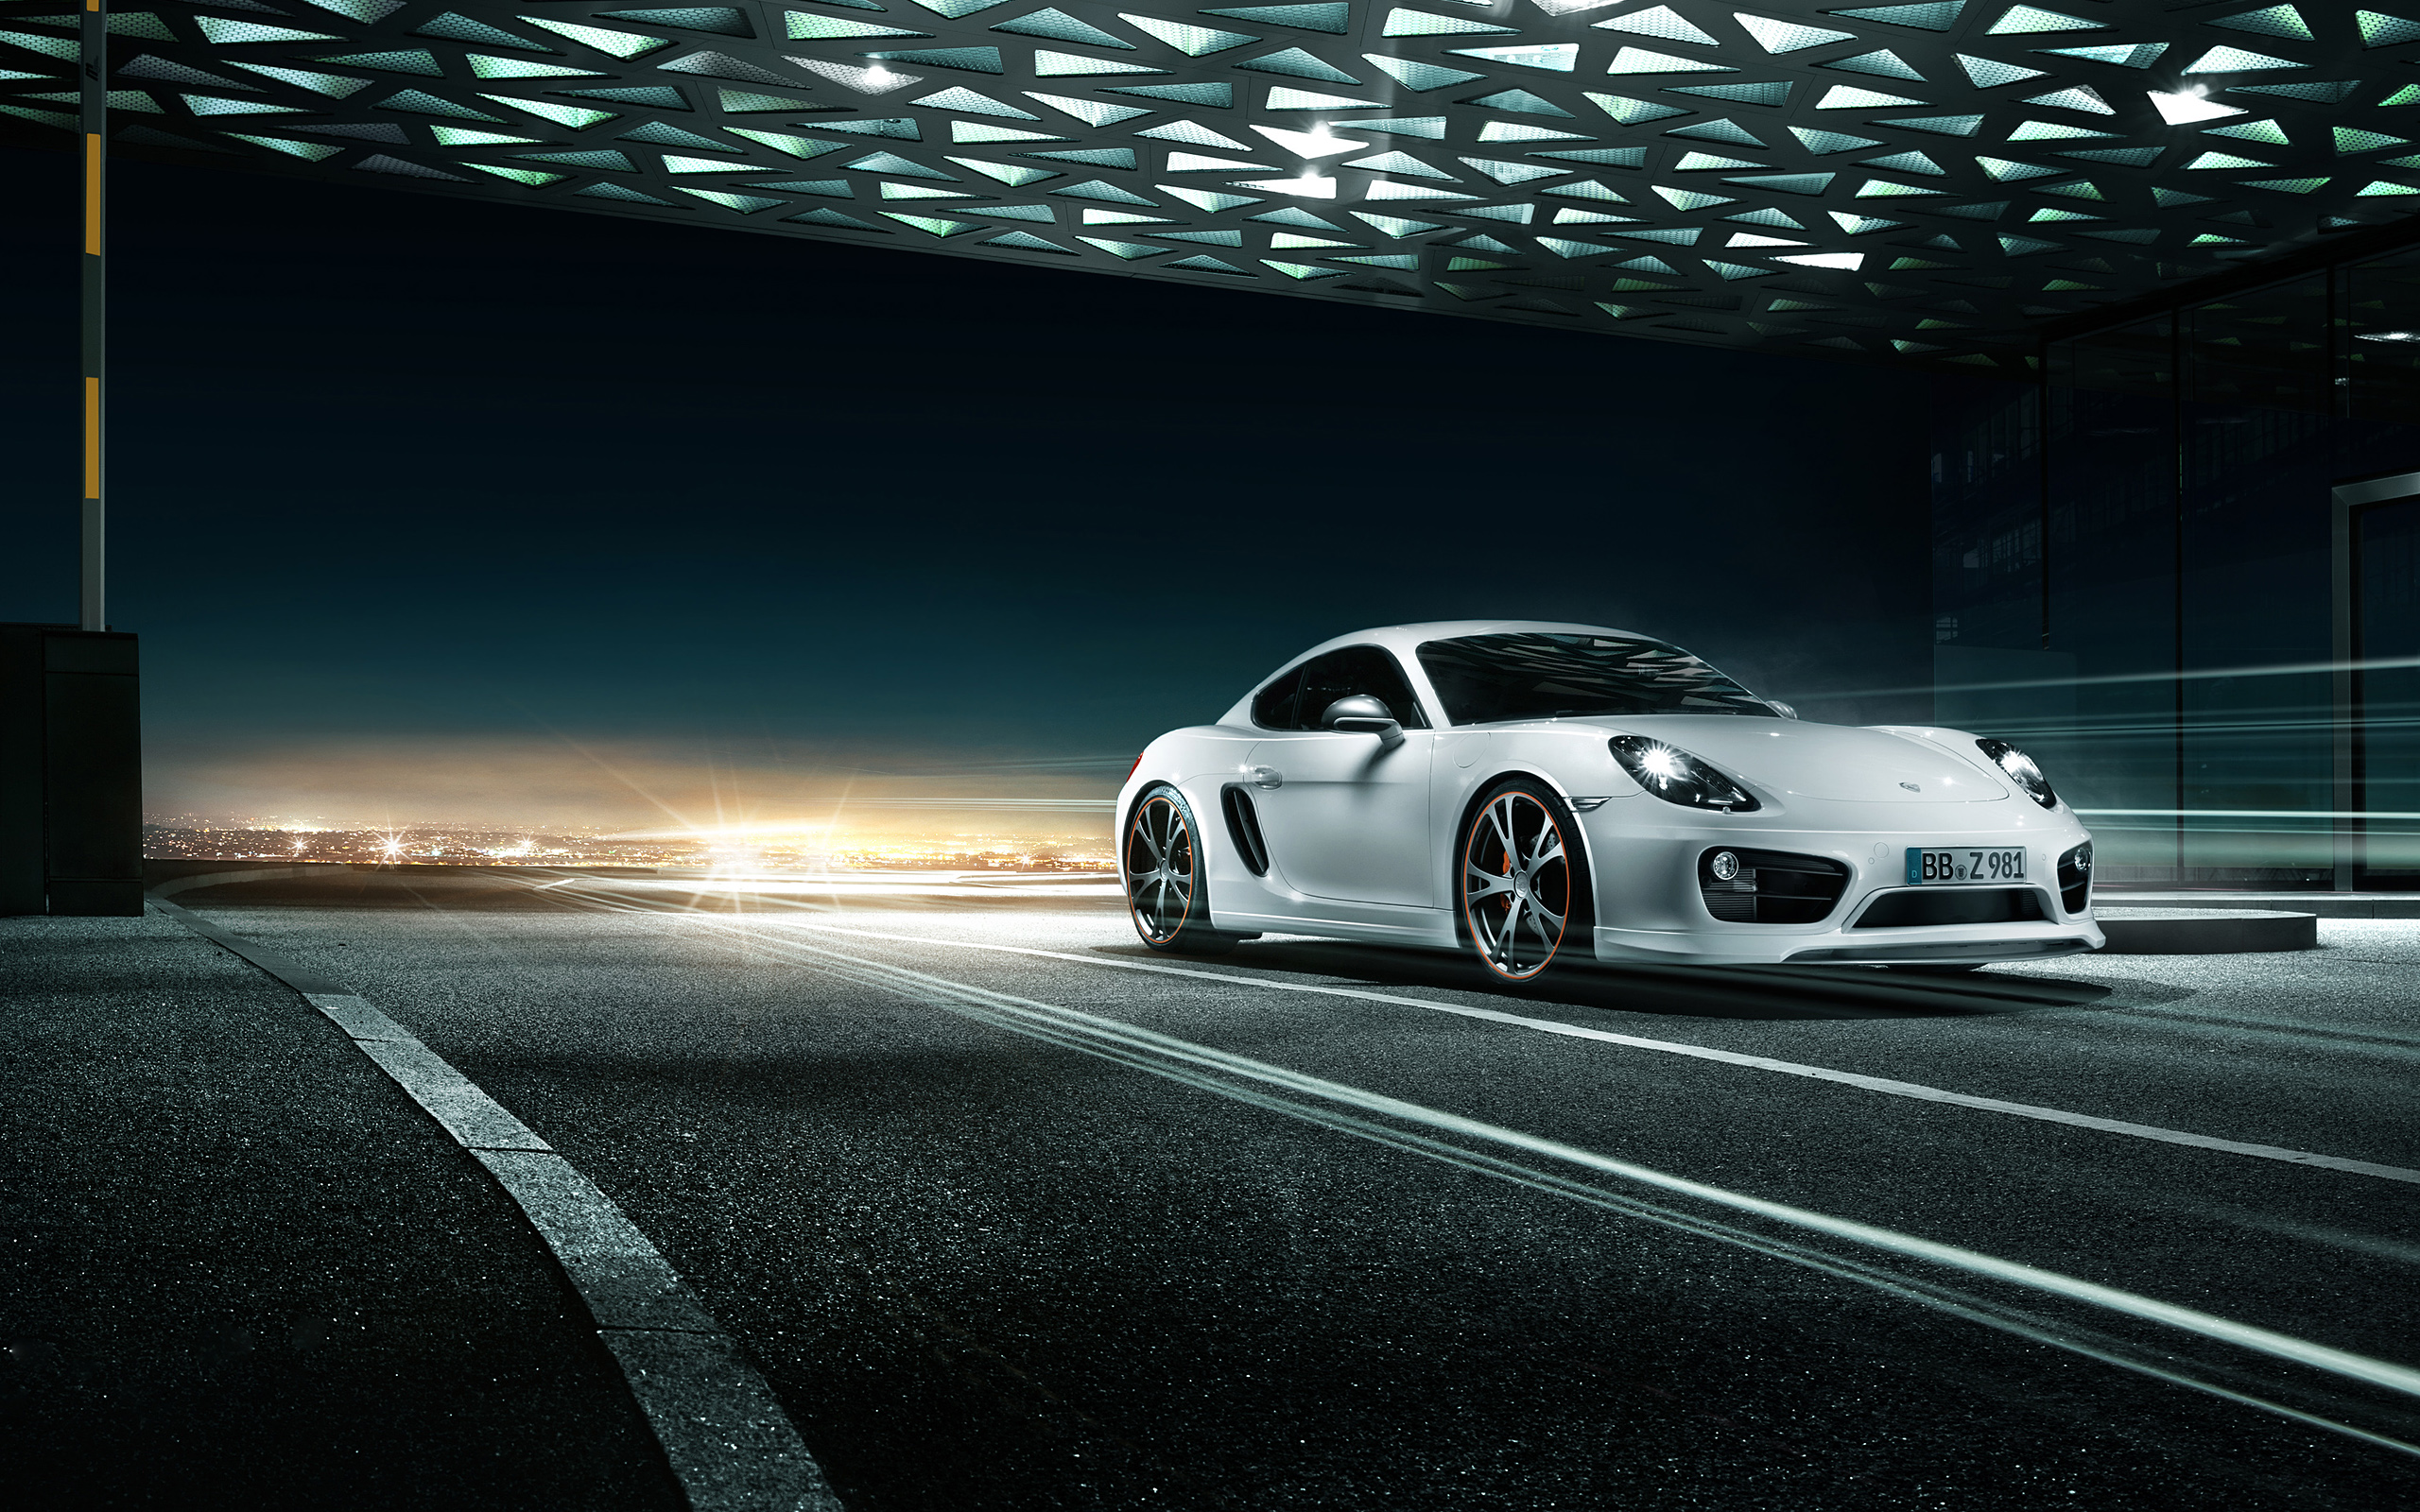  2013 TechArt Porsche Cayman Wallpaper.